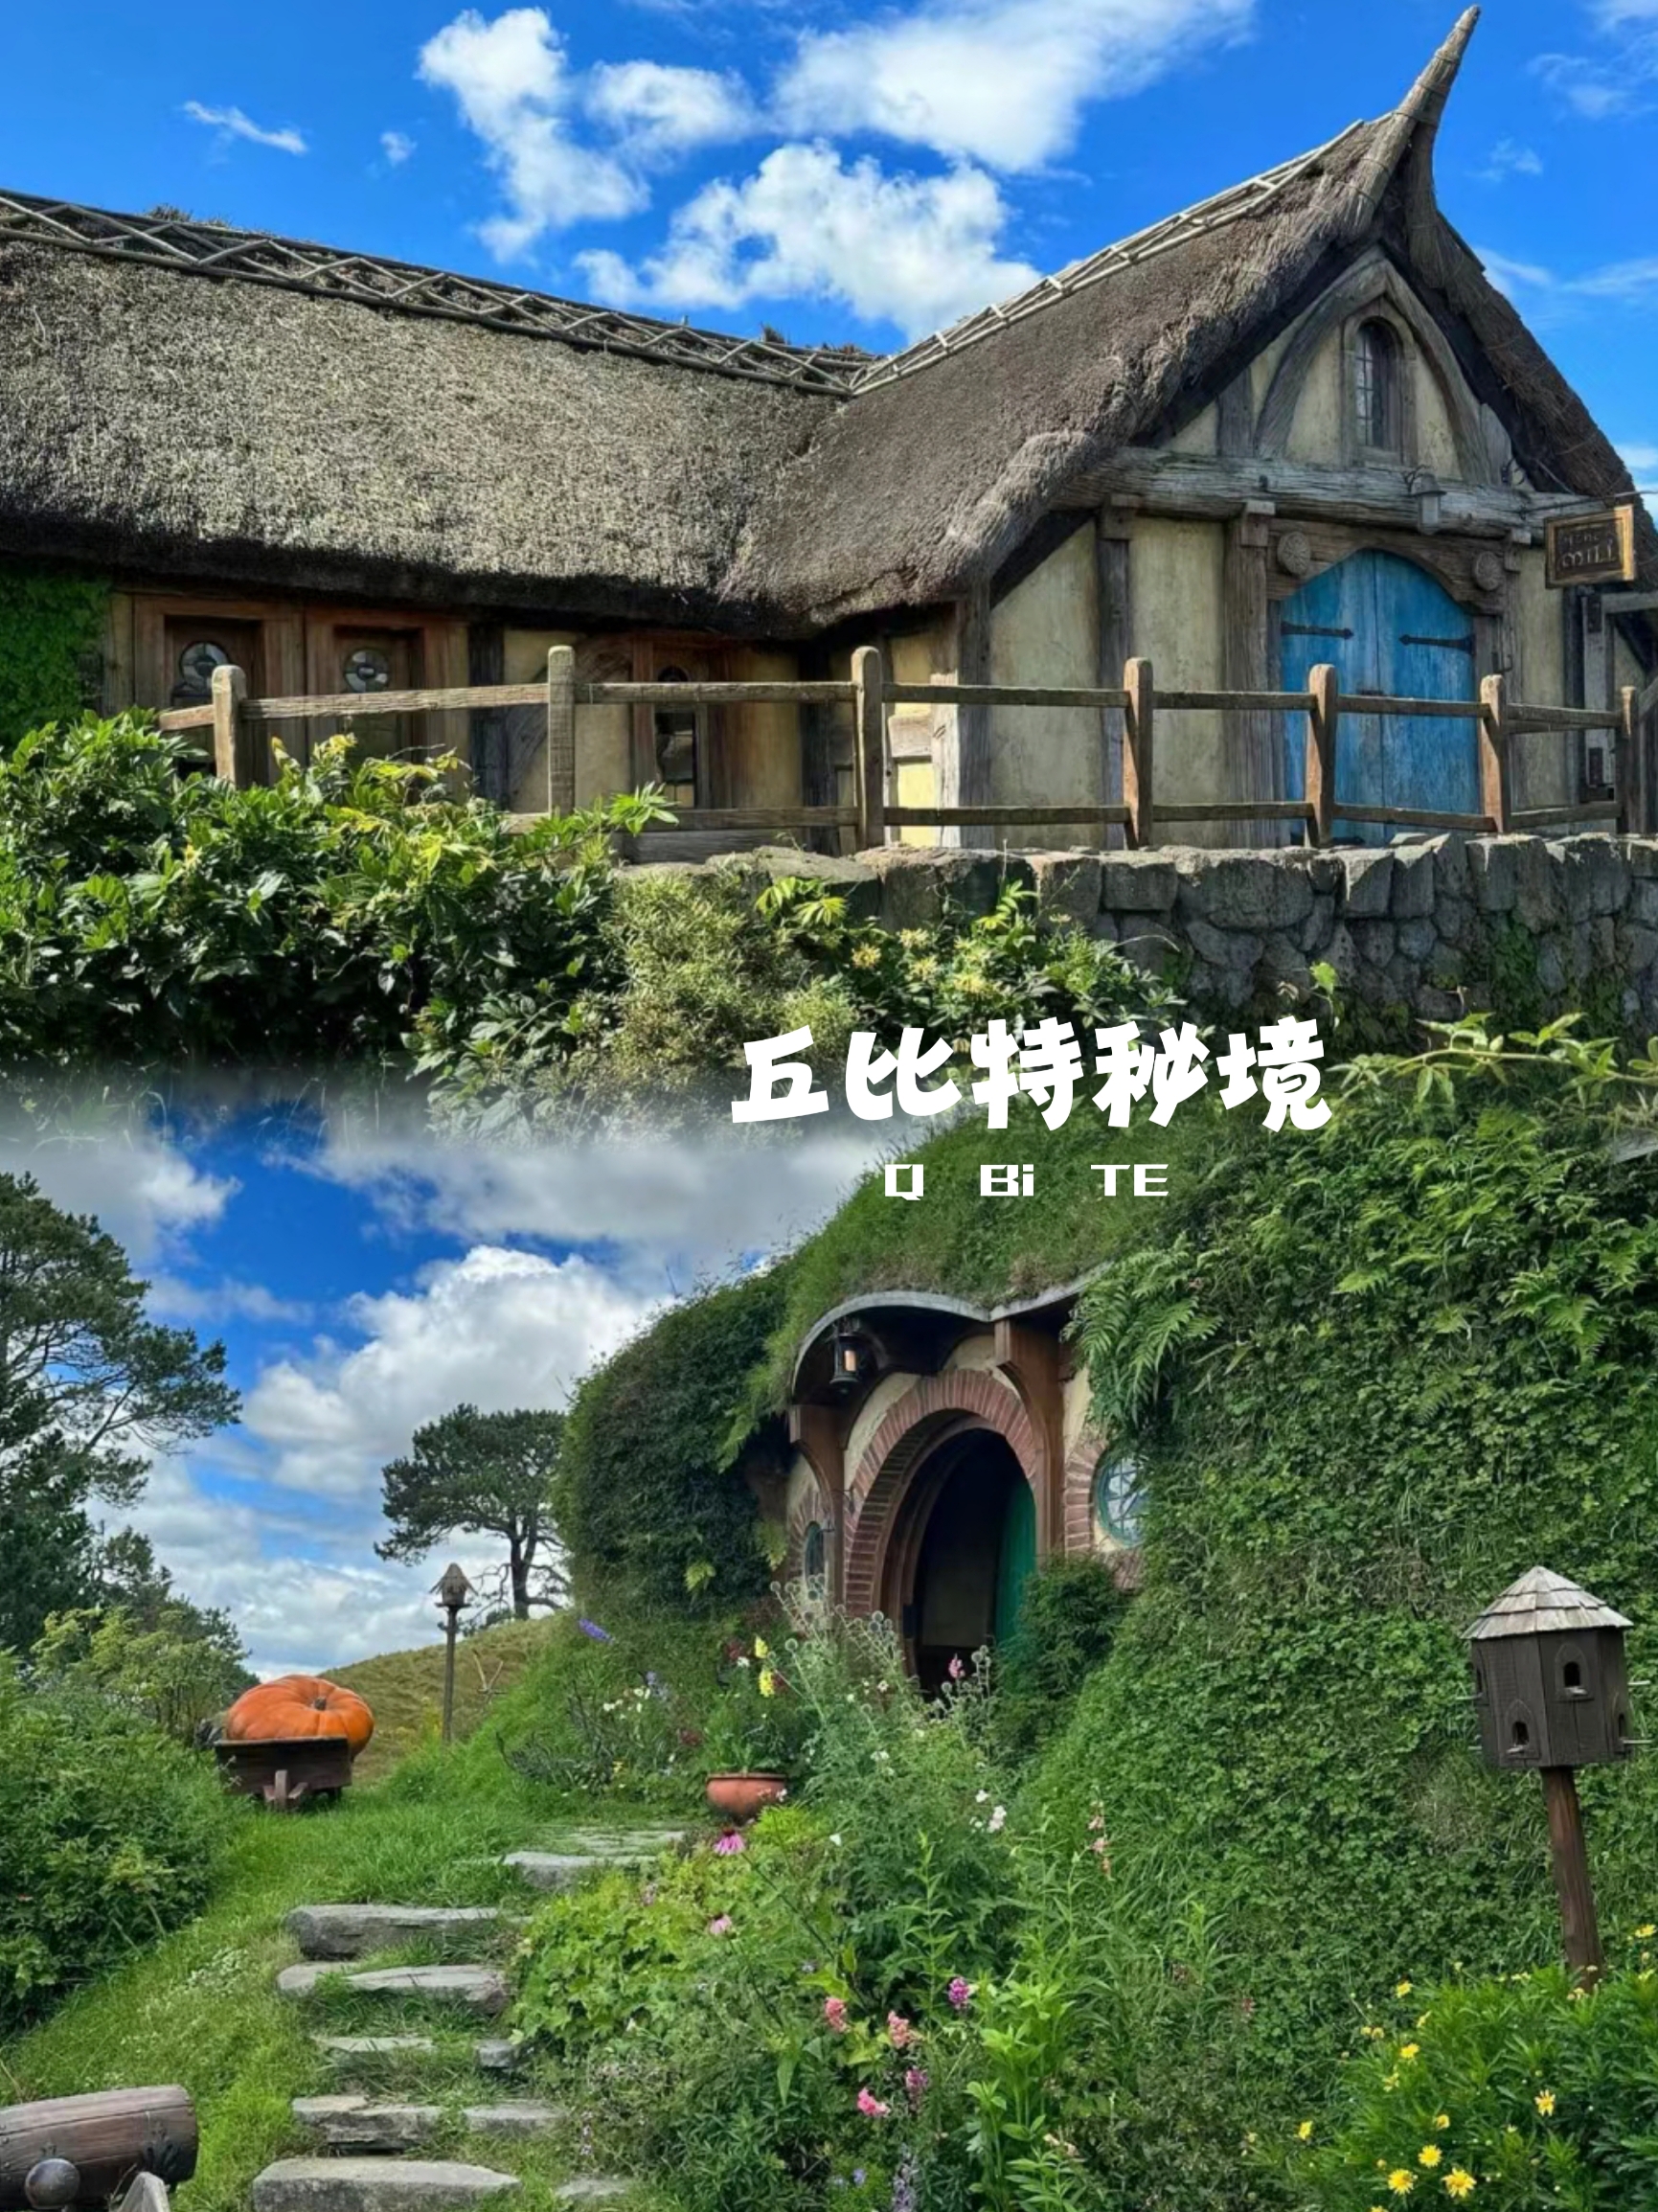 探秘 村庄:一个奇幻世界的惊喜之旅